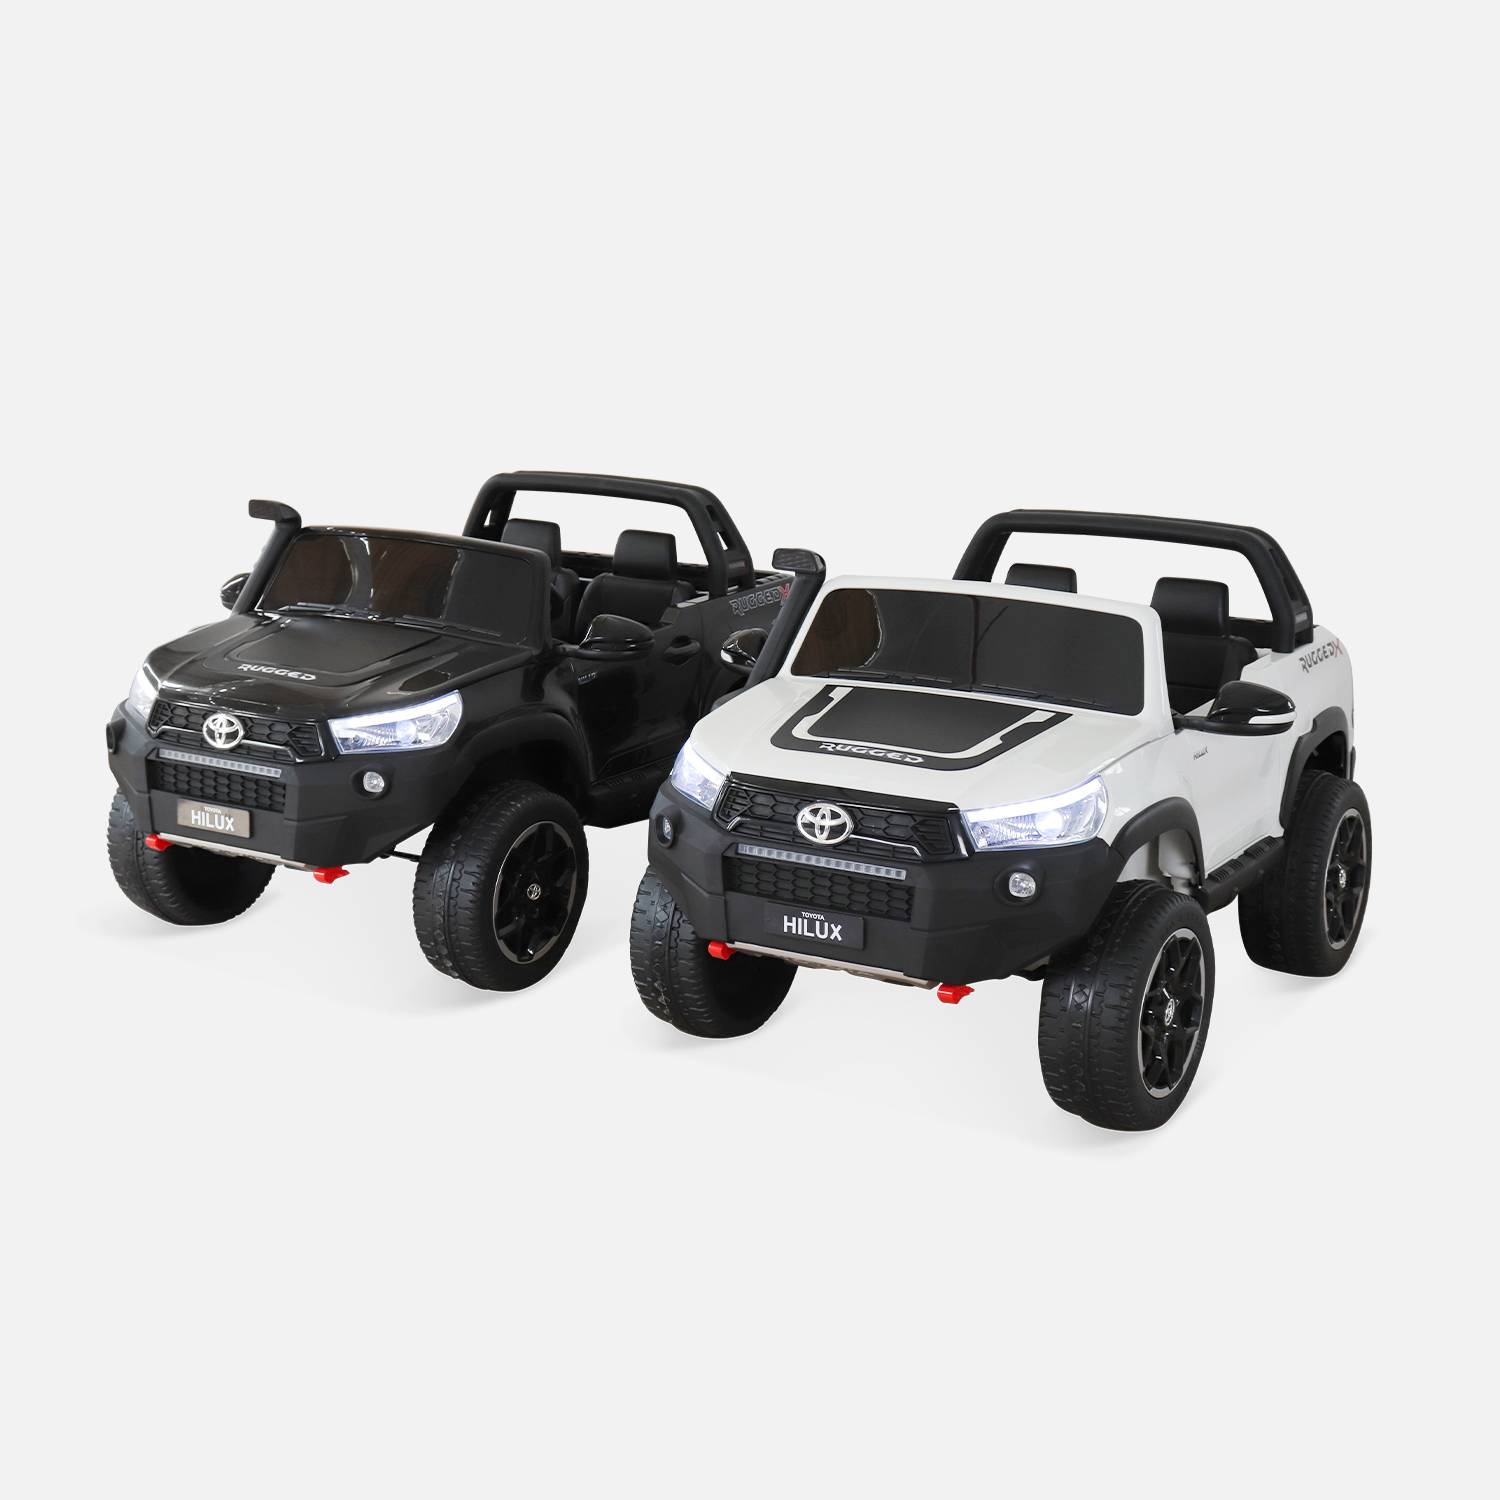 TOYOTA Hilux 2 roues motrices noir, voiture électrique 12V, 2 places, pour enfants avec autoradio, télécommande, MP3, port USB / carte SD, prise jack et phares fonctionnels Photo9